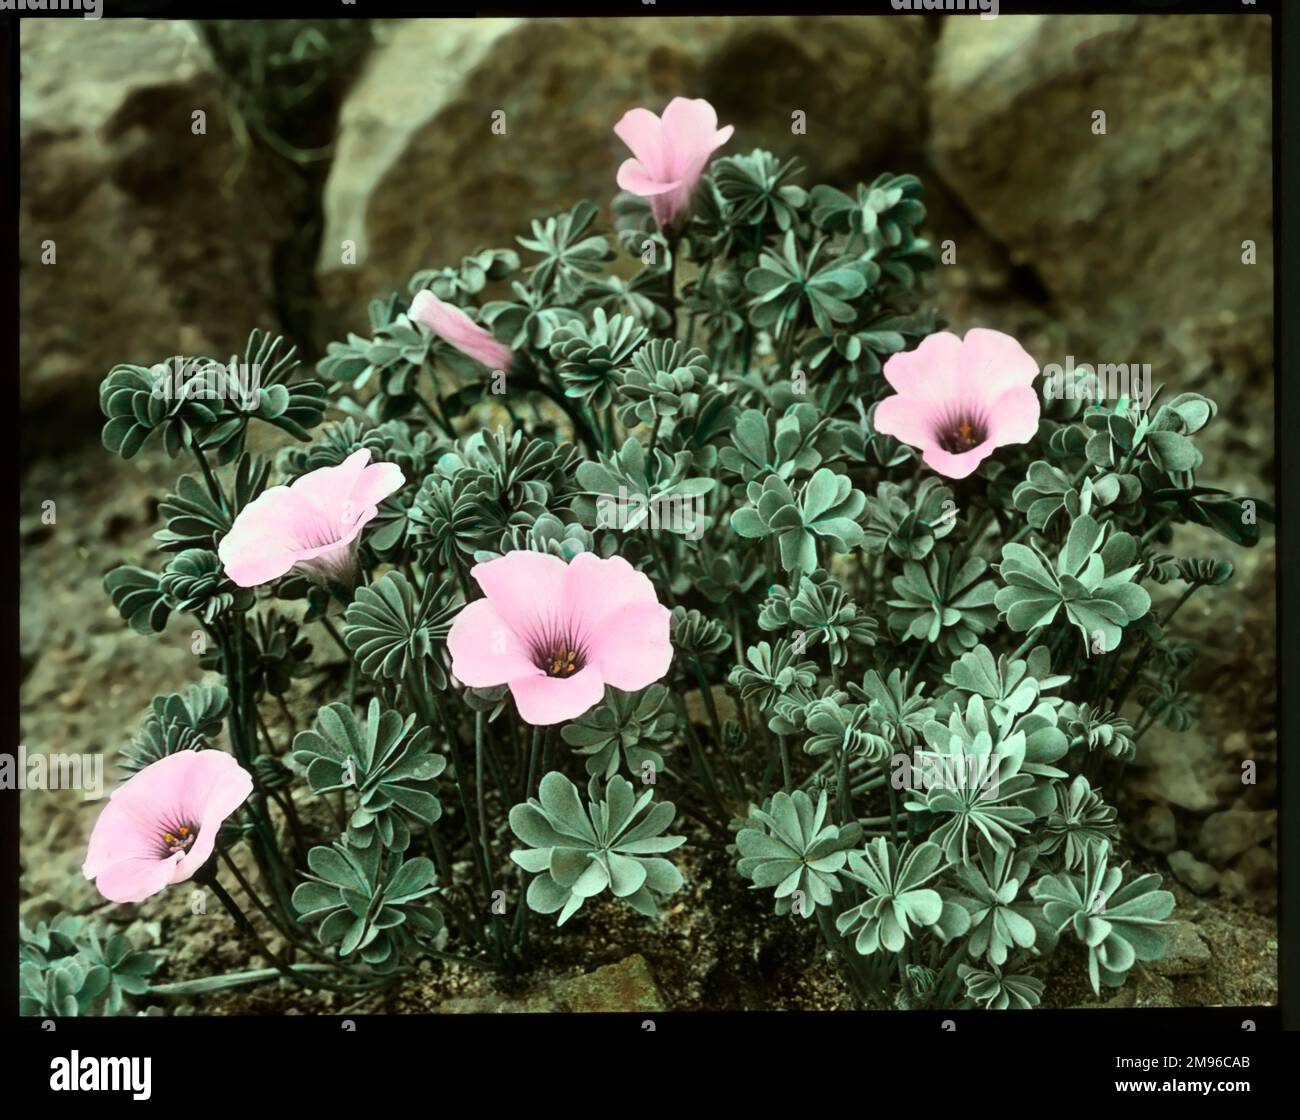 Oxalis Crassipes Rosea (Strawberry Oxalis, Wood Sorrel), pianta fiorita perenne della famiglia Oxalidaceae, con fiori rosa. Visto qui crescere in un ambiente roccioso. Foto Stock